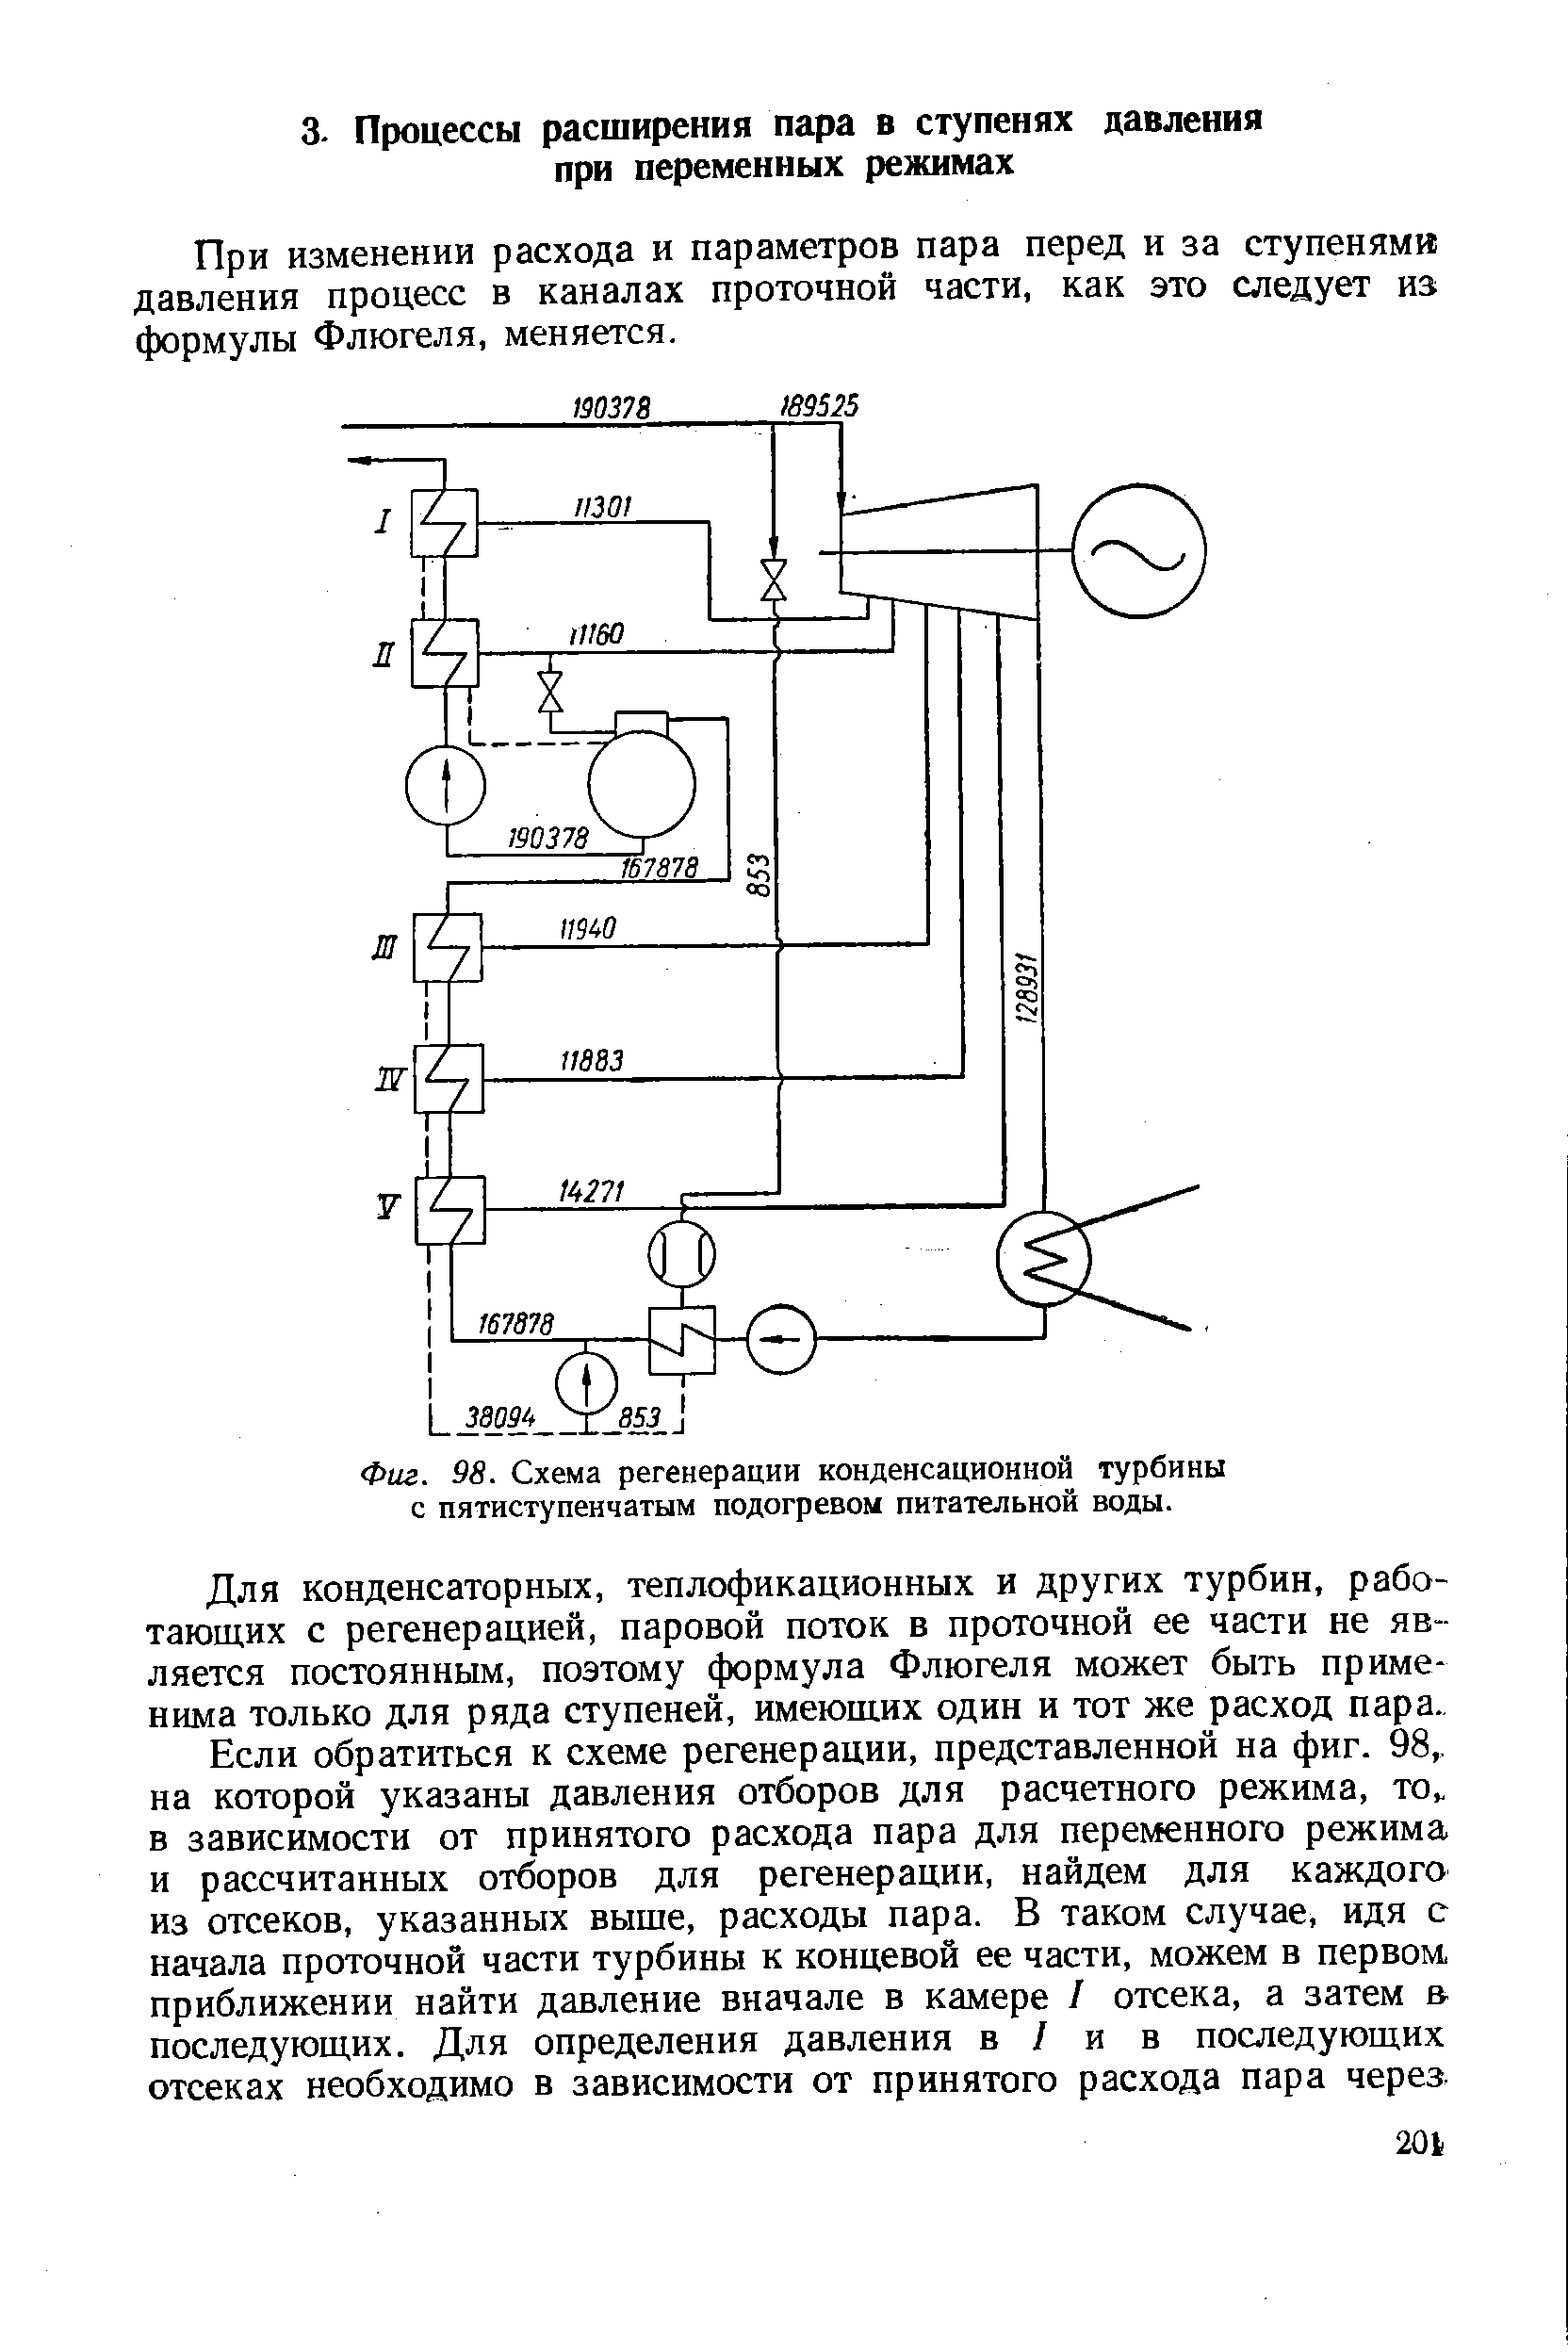 Фиг. 98. Схема регенерации <a href="/info/105138">конденсационной турбины</a> с пятиступенчатым подогревом питательной воды.
